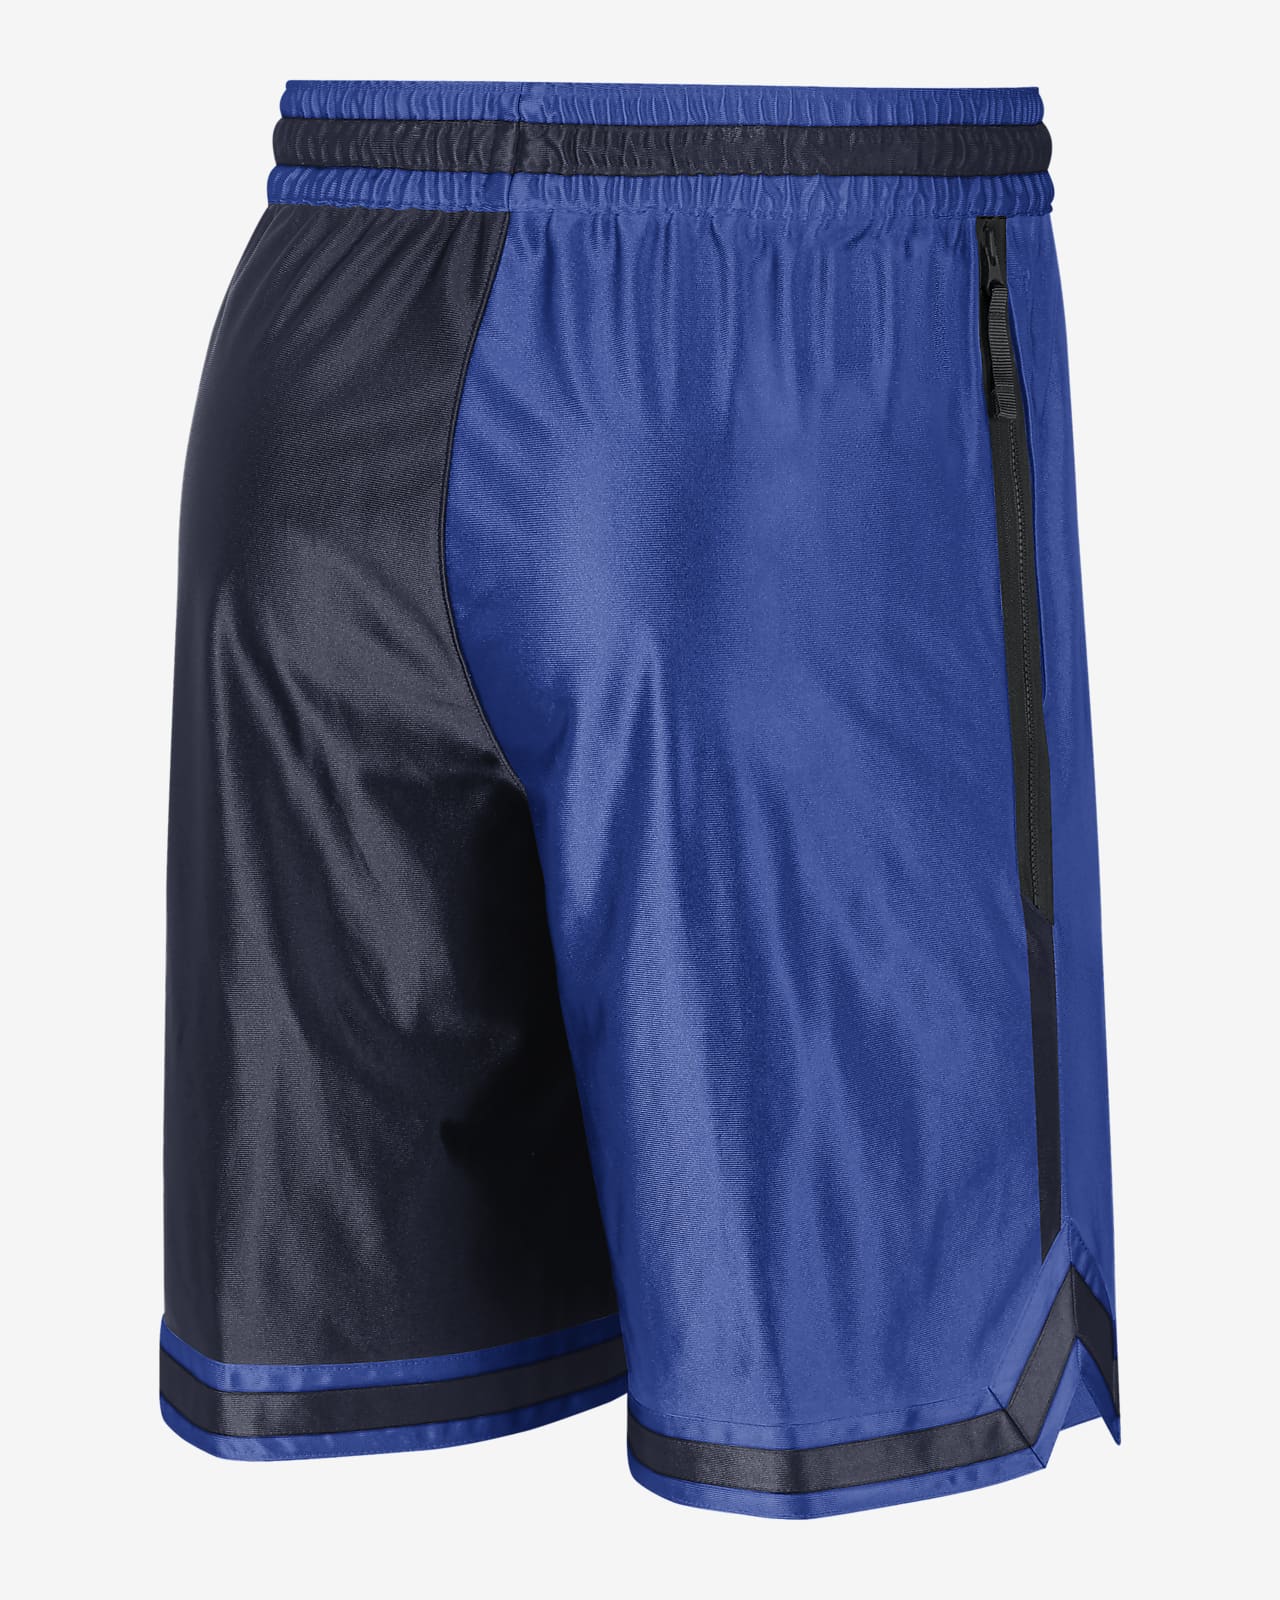 Under Armour 11 Basketball Shorts - The Matador